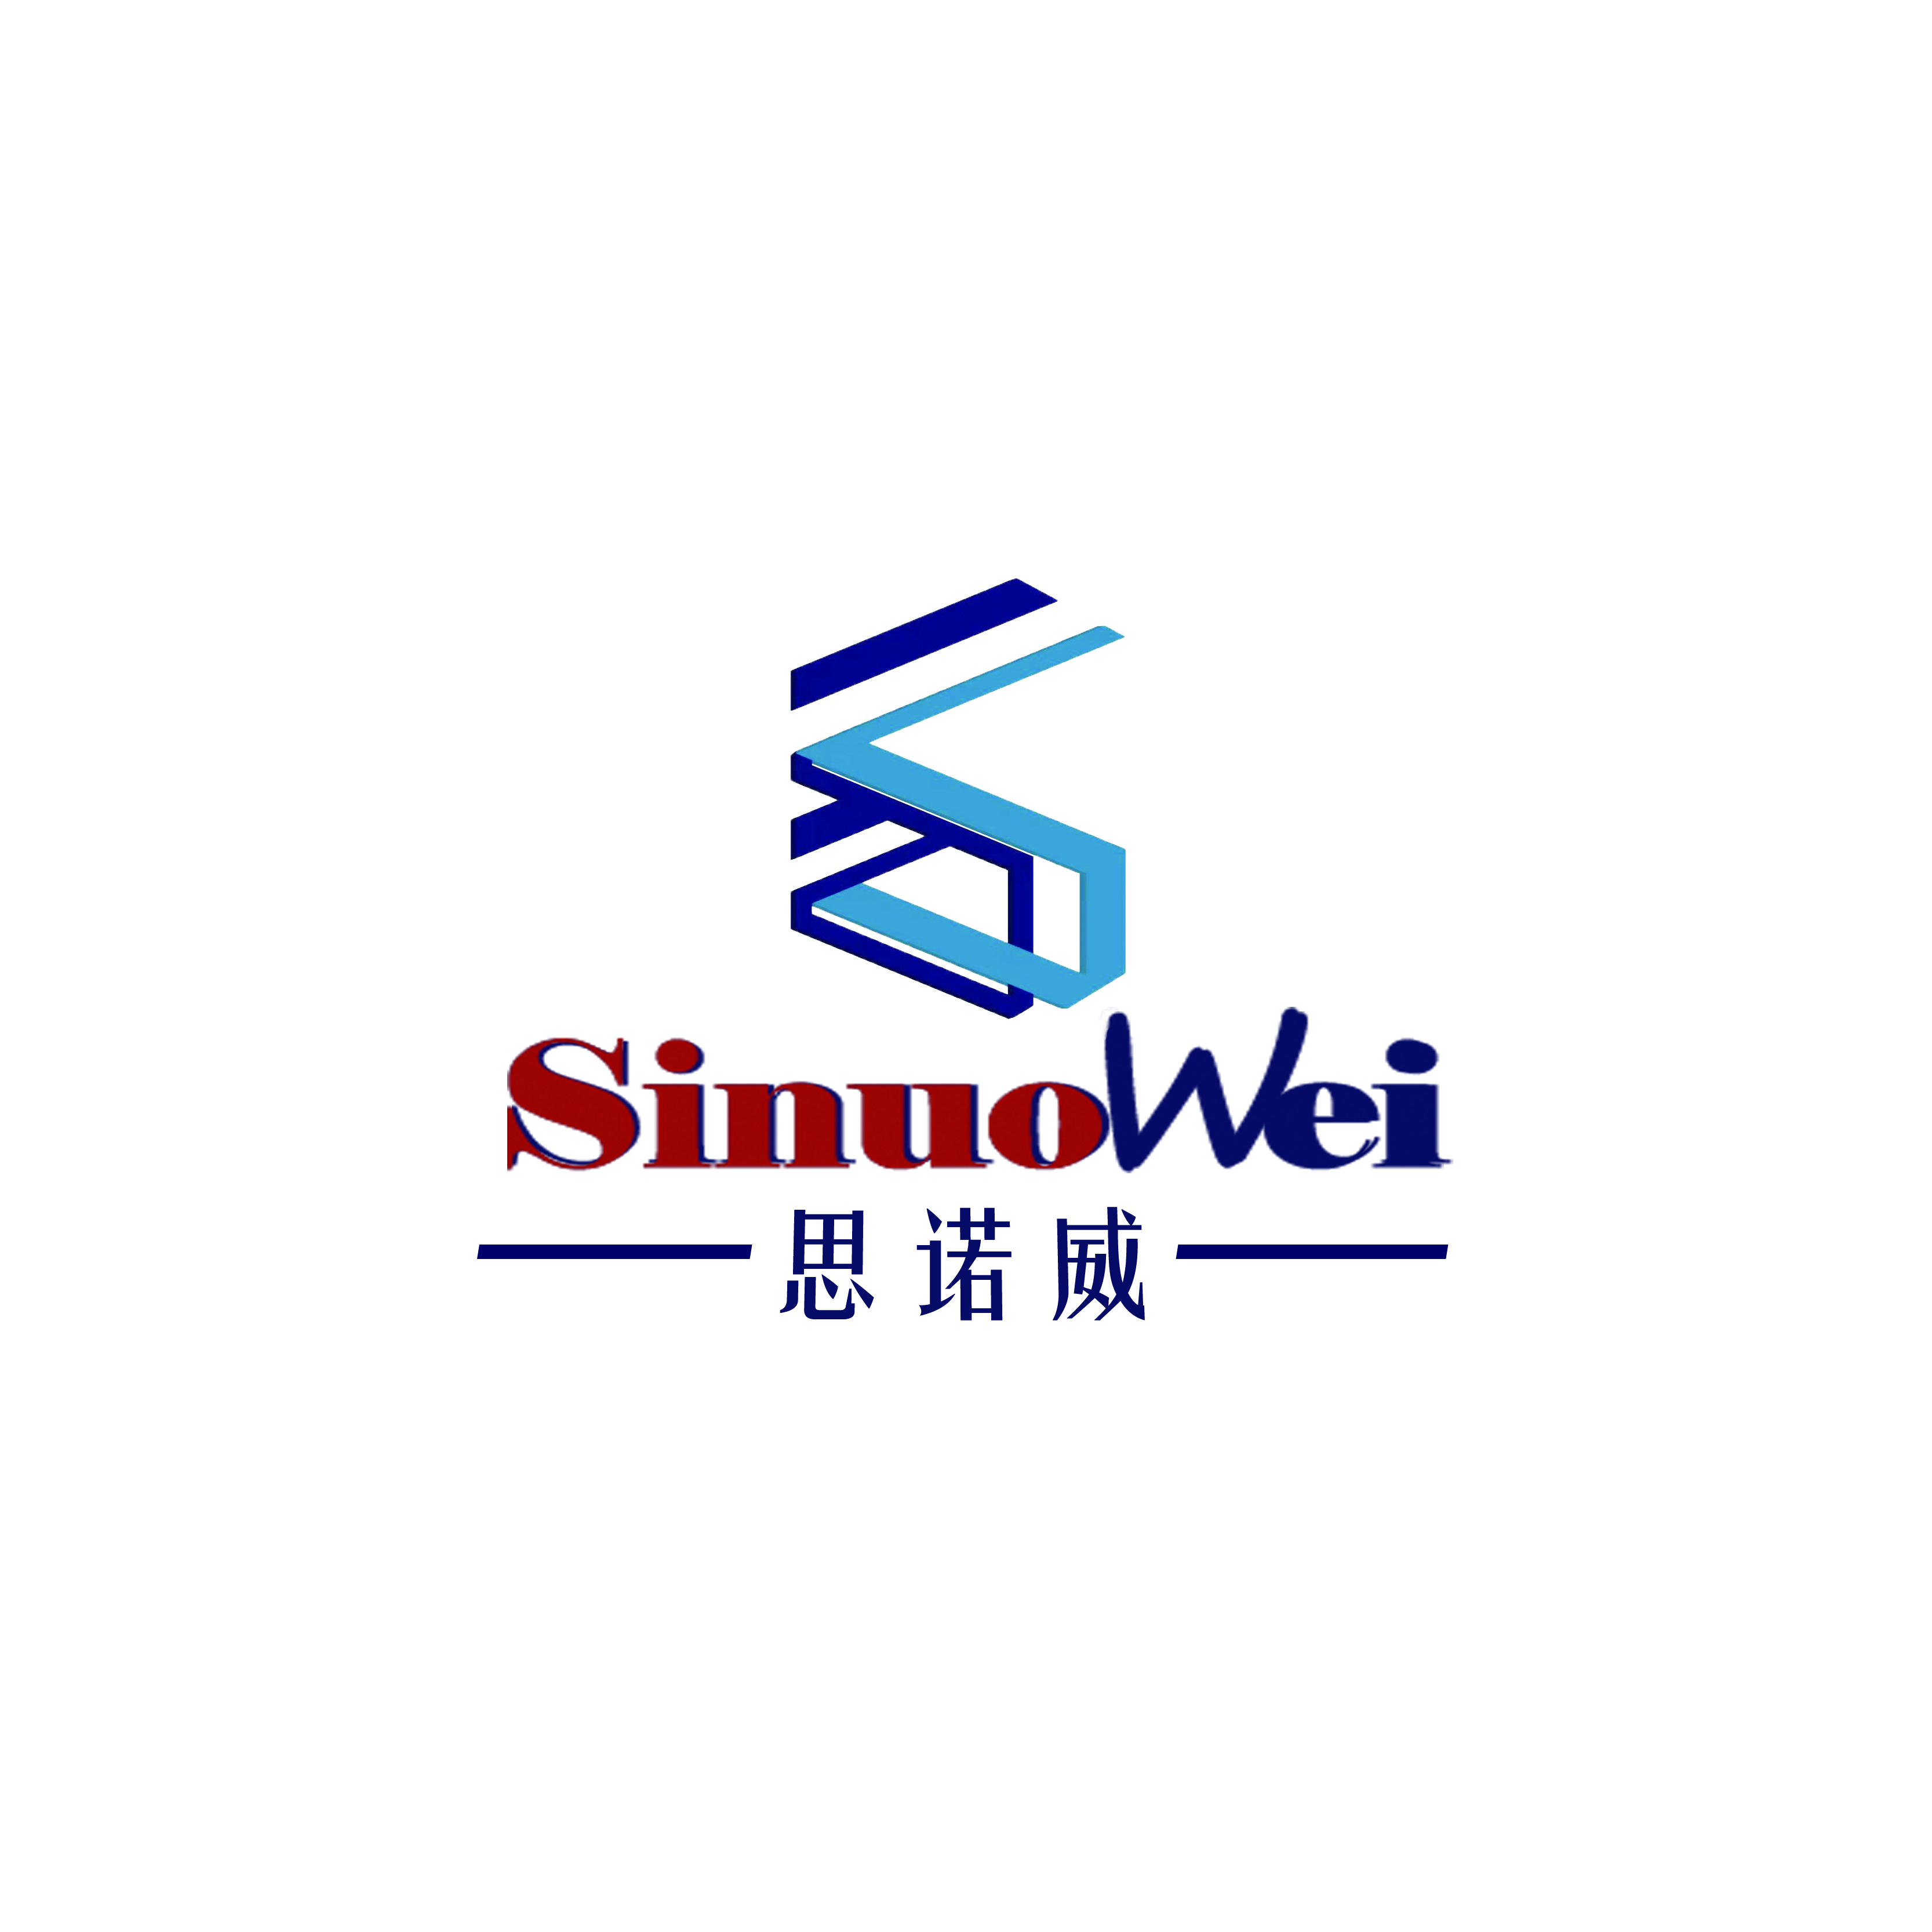 โรงงานอุปกรณ์อัตโนมัติของ sinuowei เริ่มทำงานวันนี้